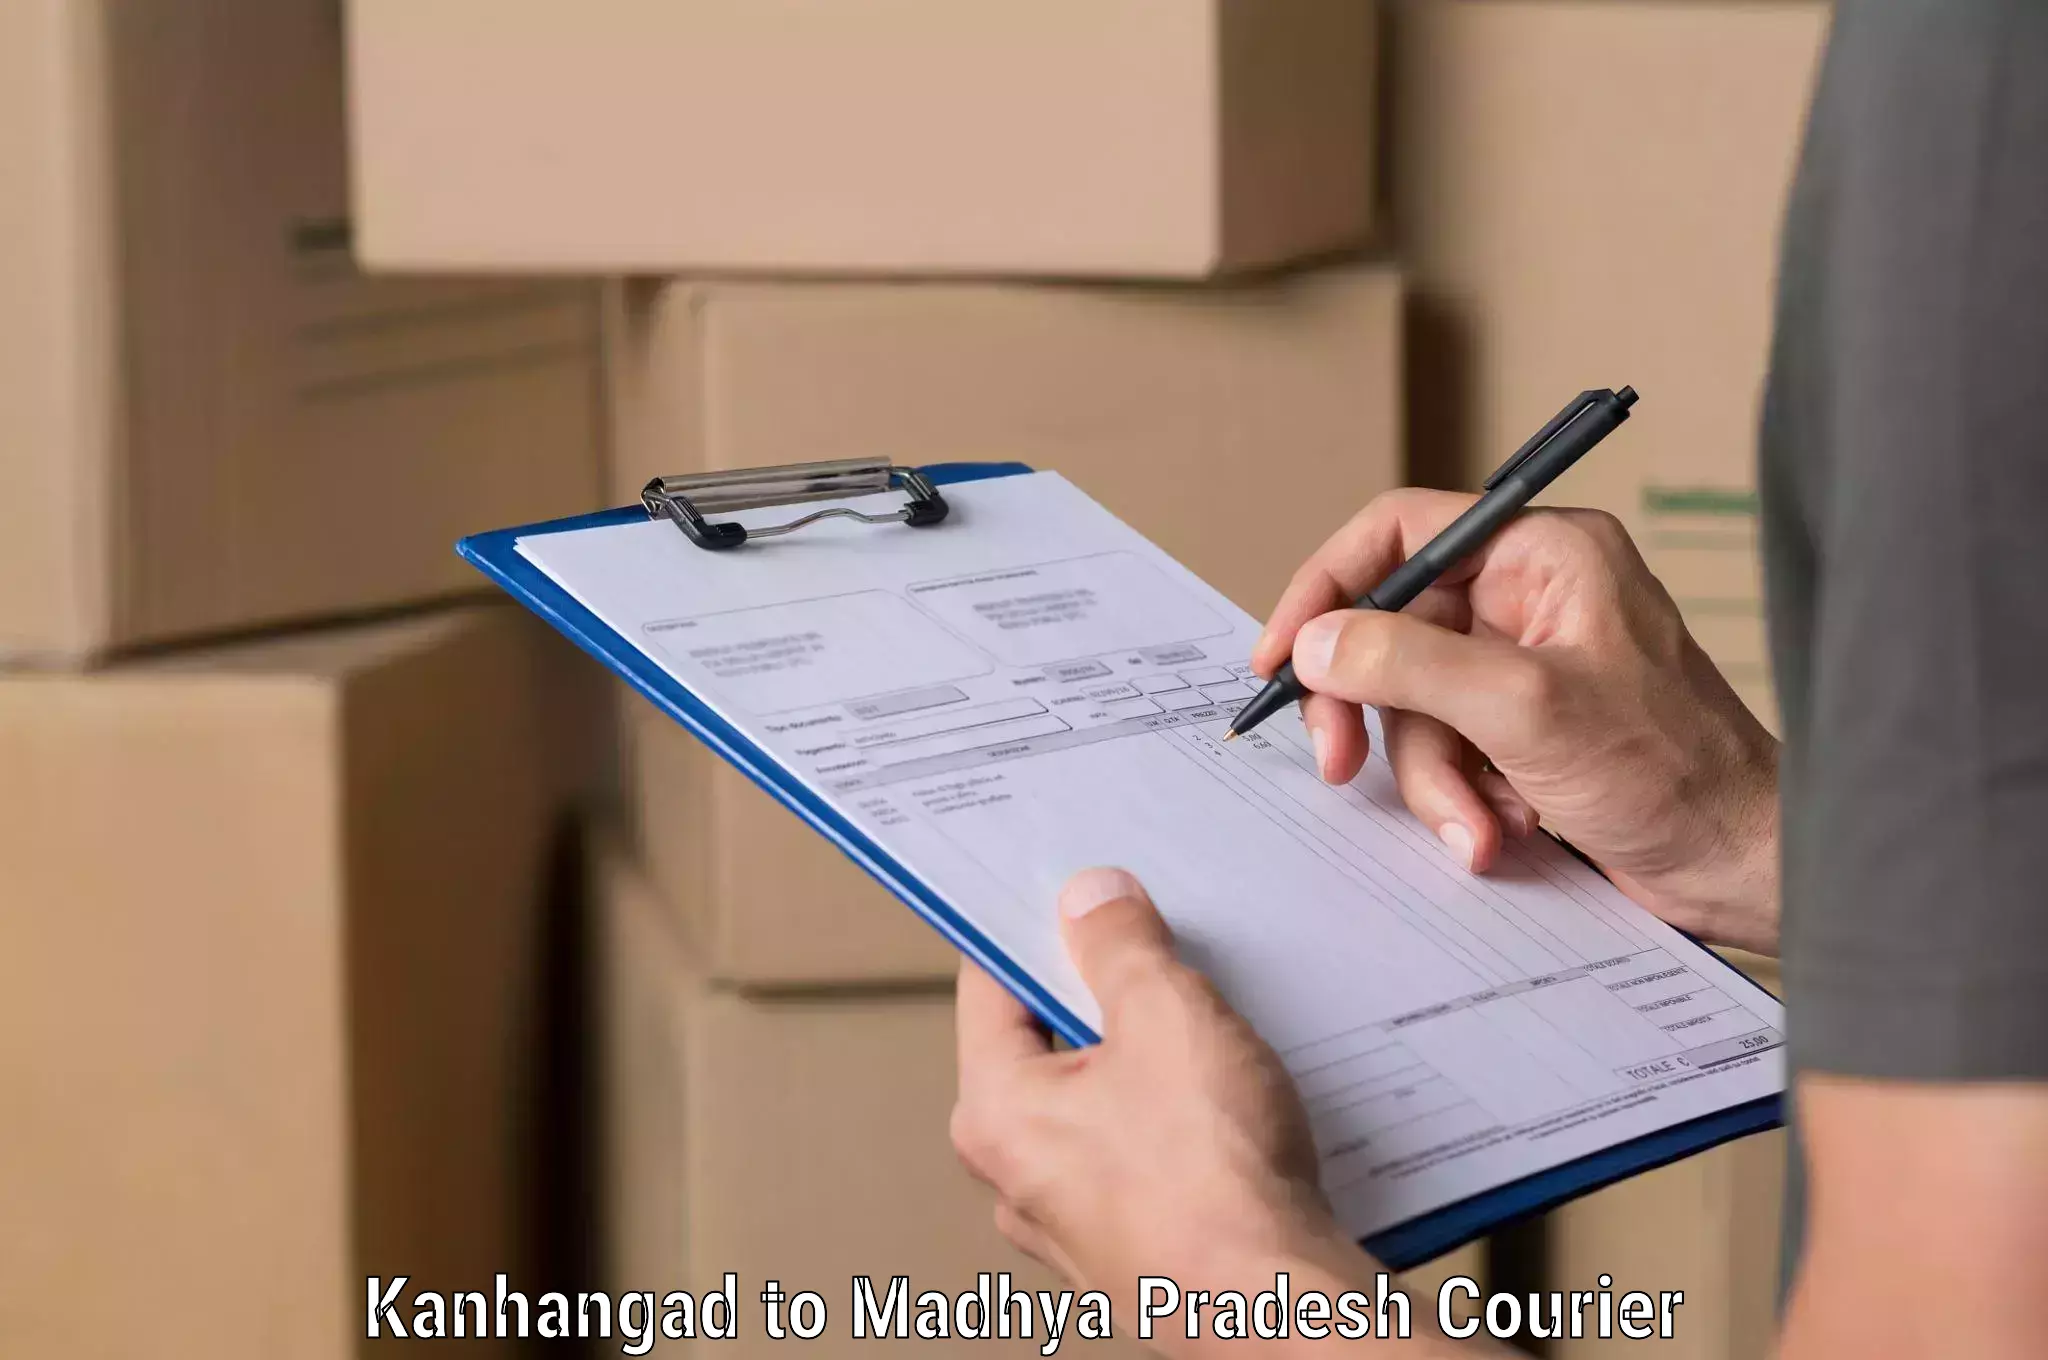 International parcel service Kanhangad to Khandwa